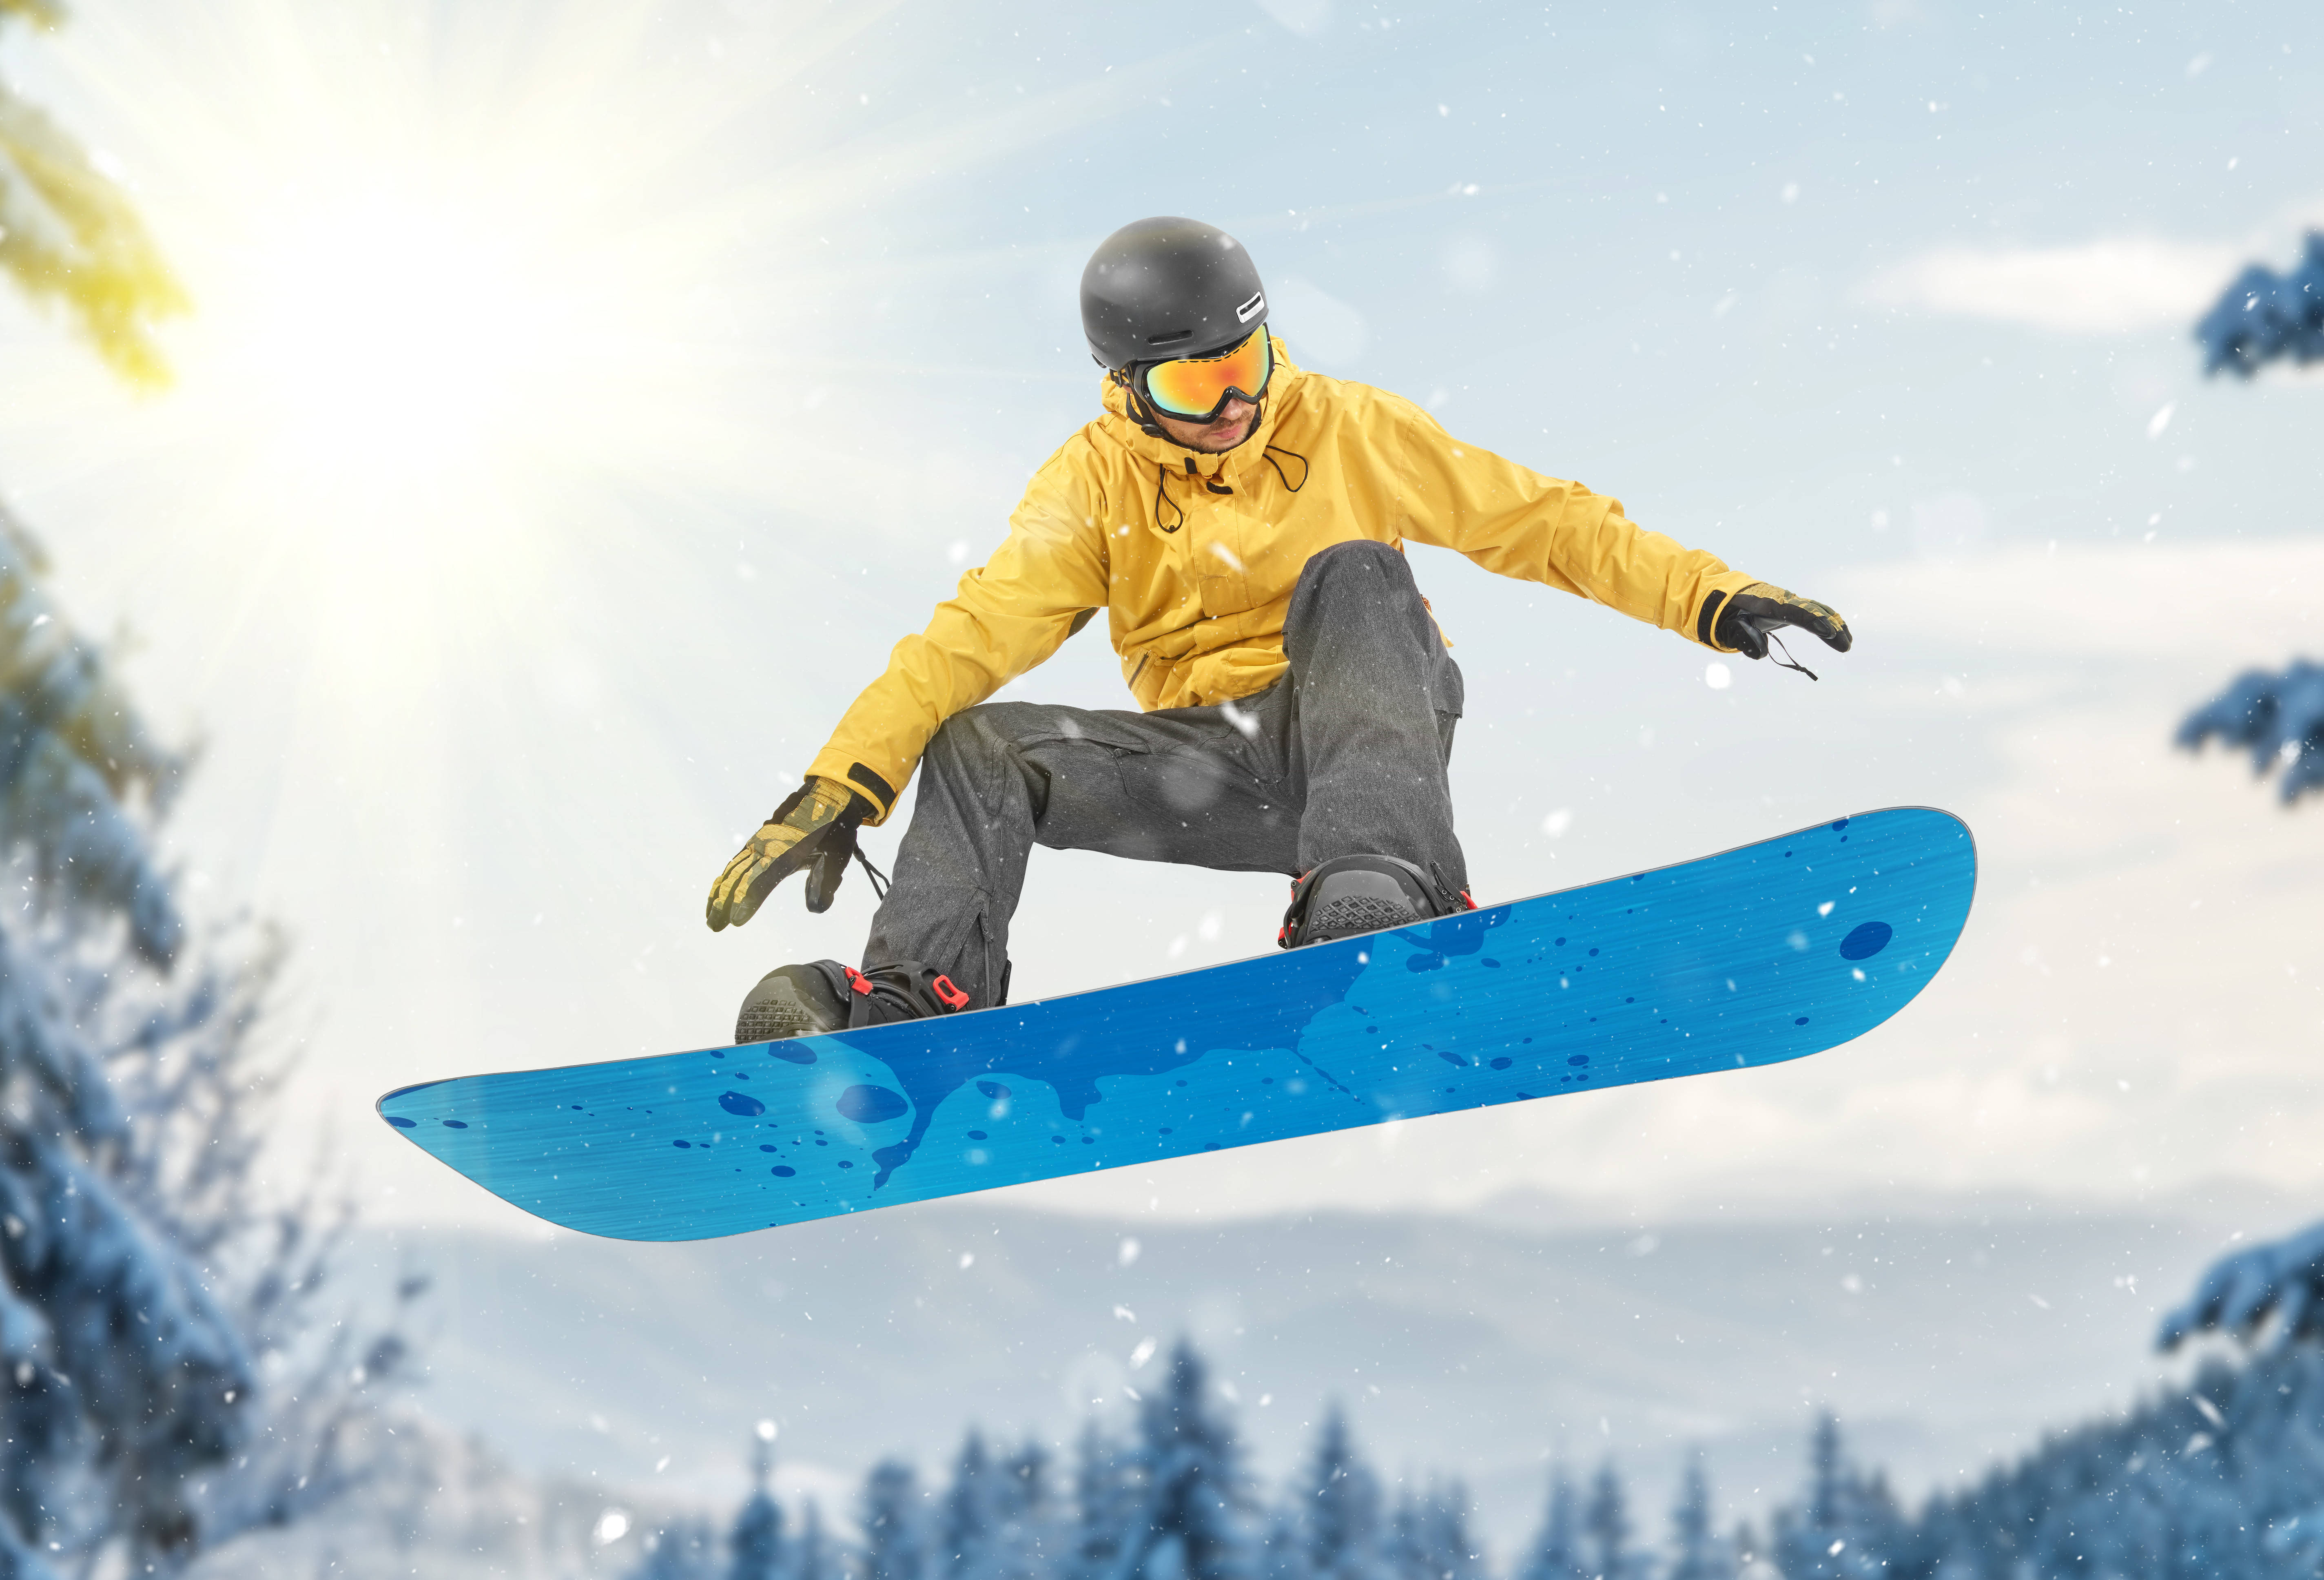 OTA平台：反季滑雪、滑冰成多地热门玩乐方式，“滑雪”相关搜索热度环比涨4倍